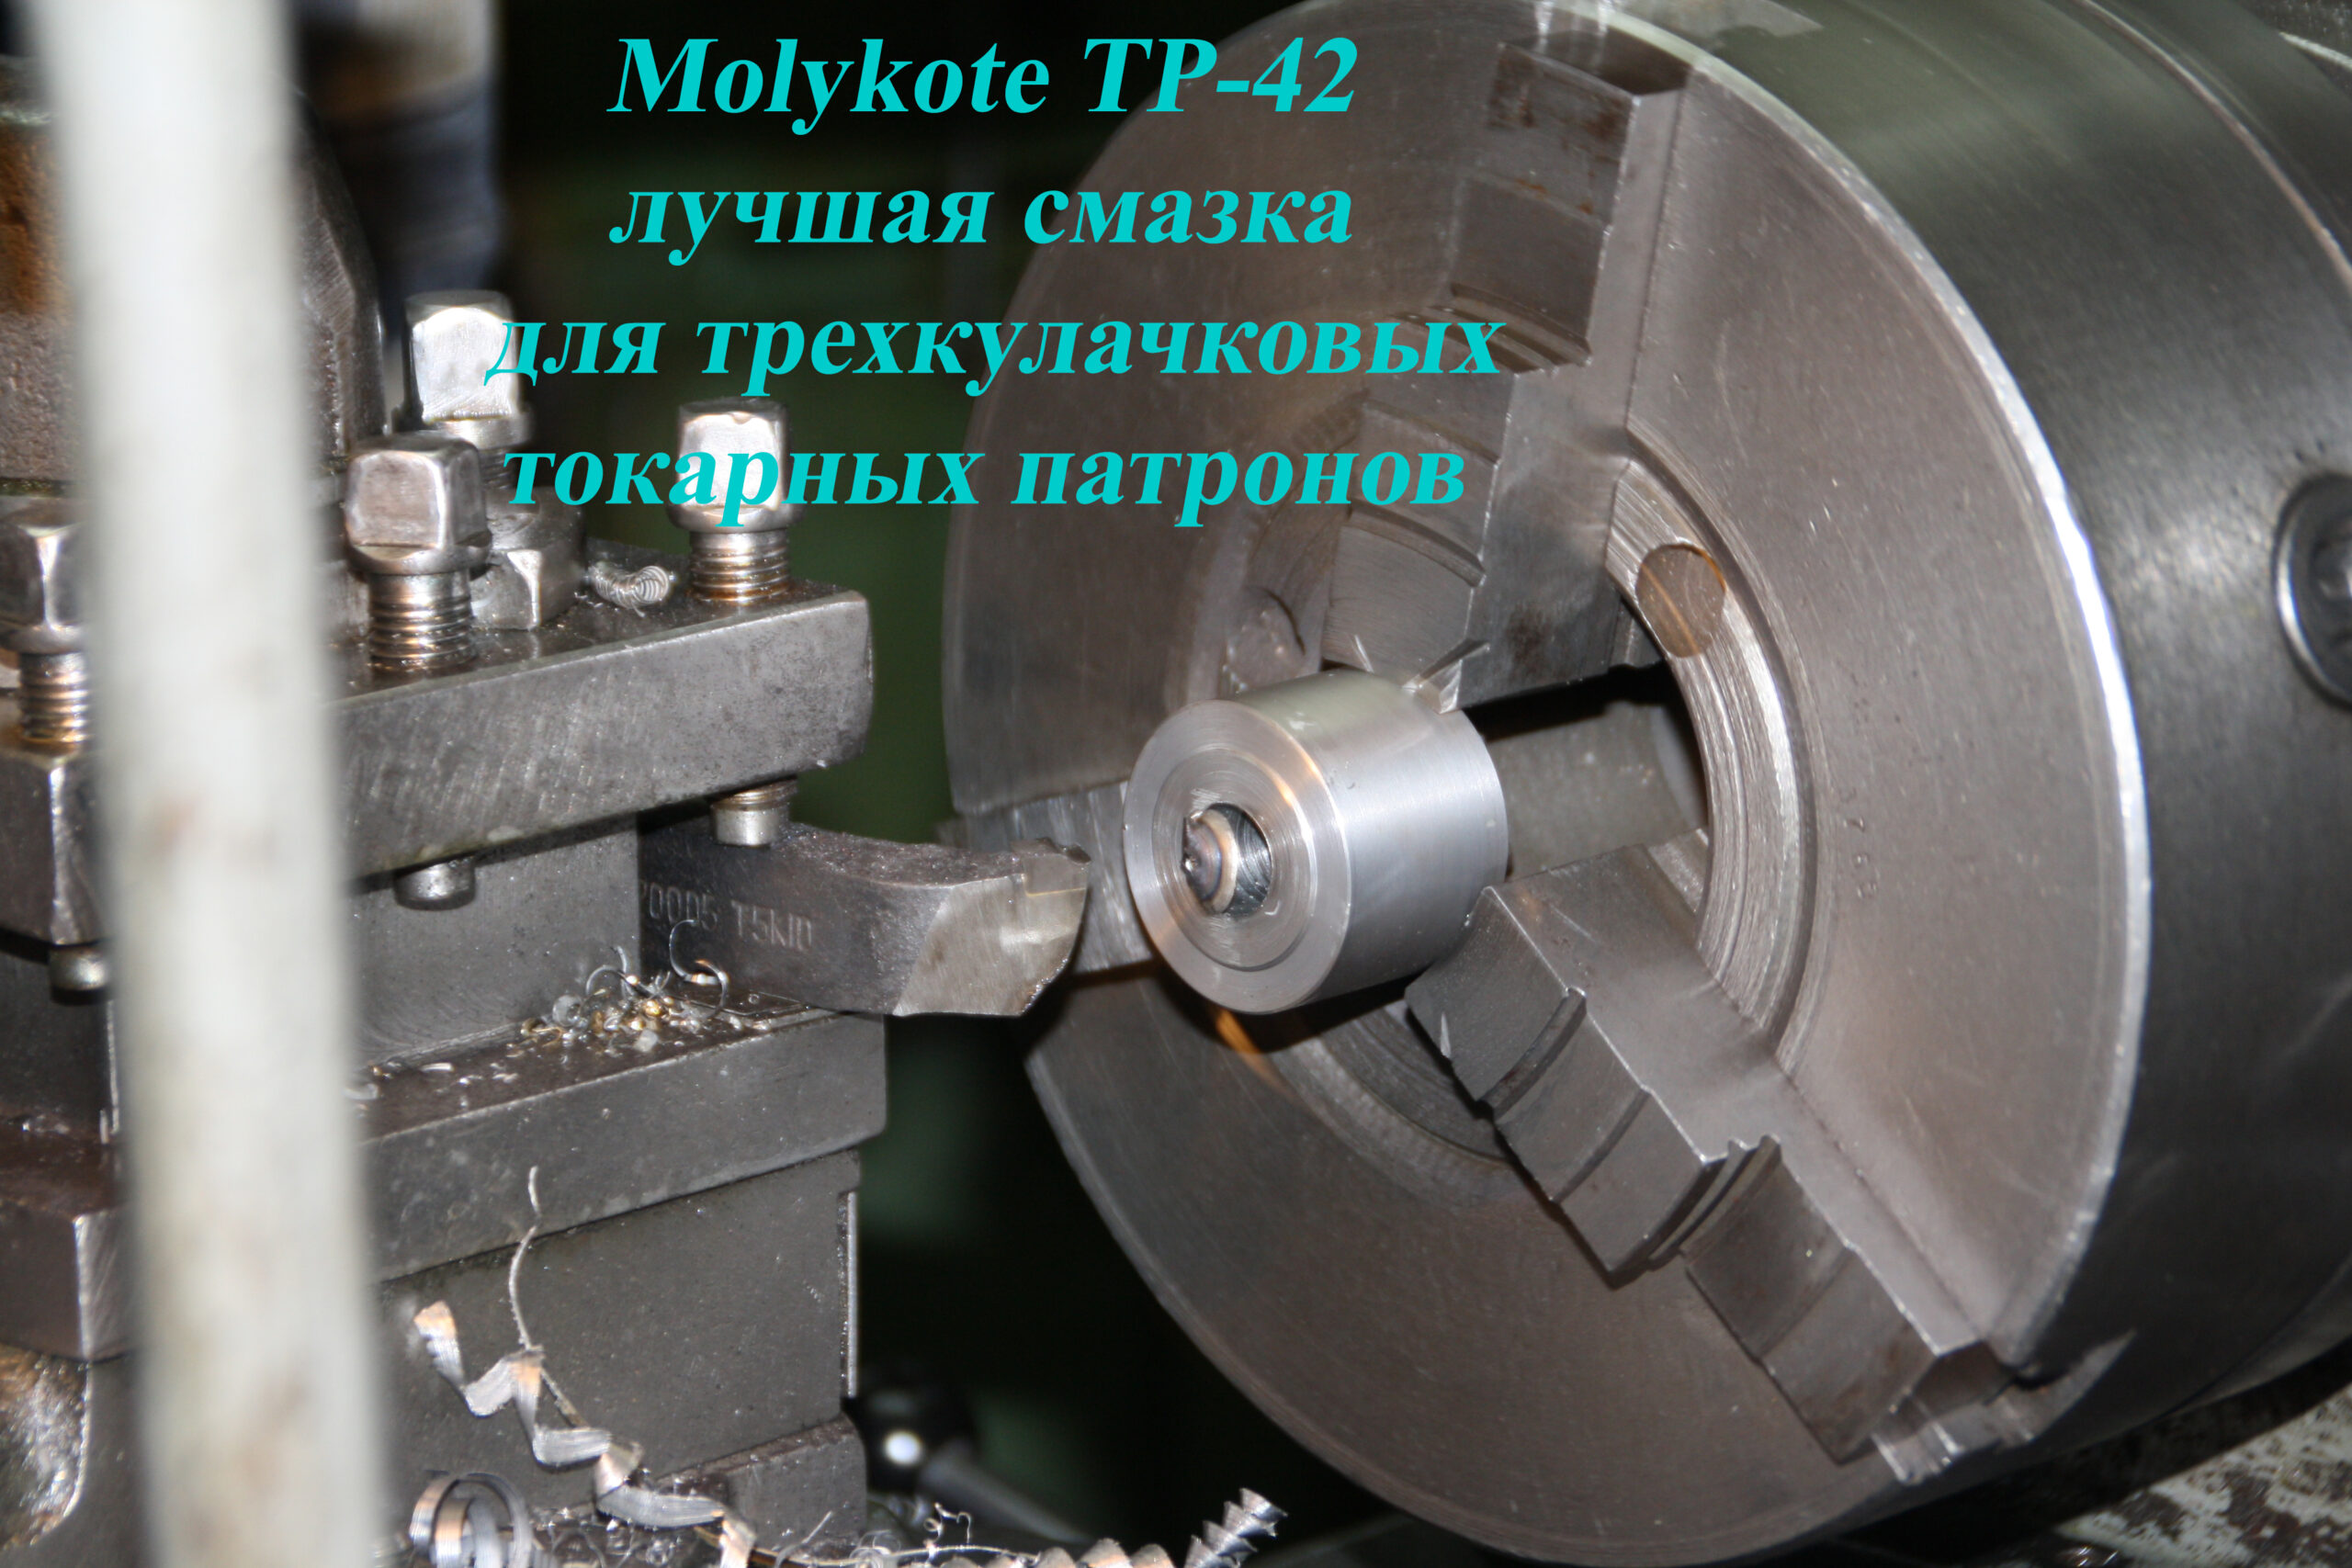 smazka-patron-tokarny-3kh-kulachkovyy-molykote-tp-42-2